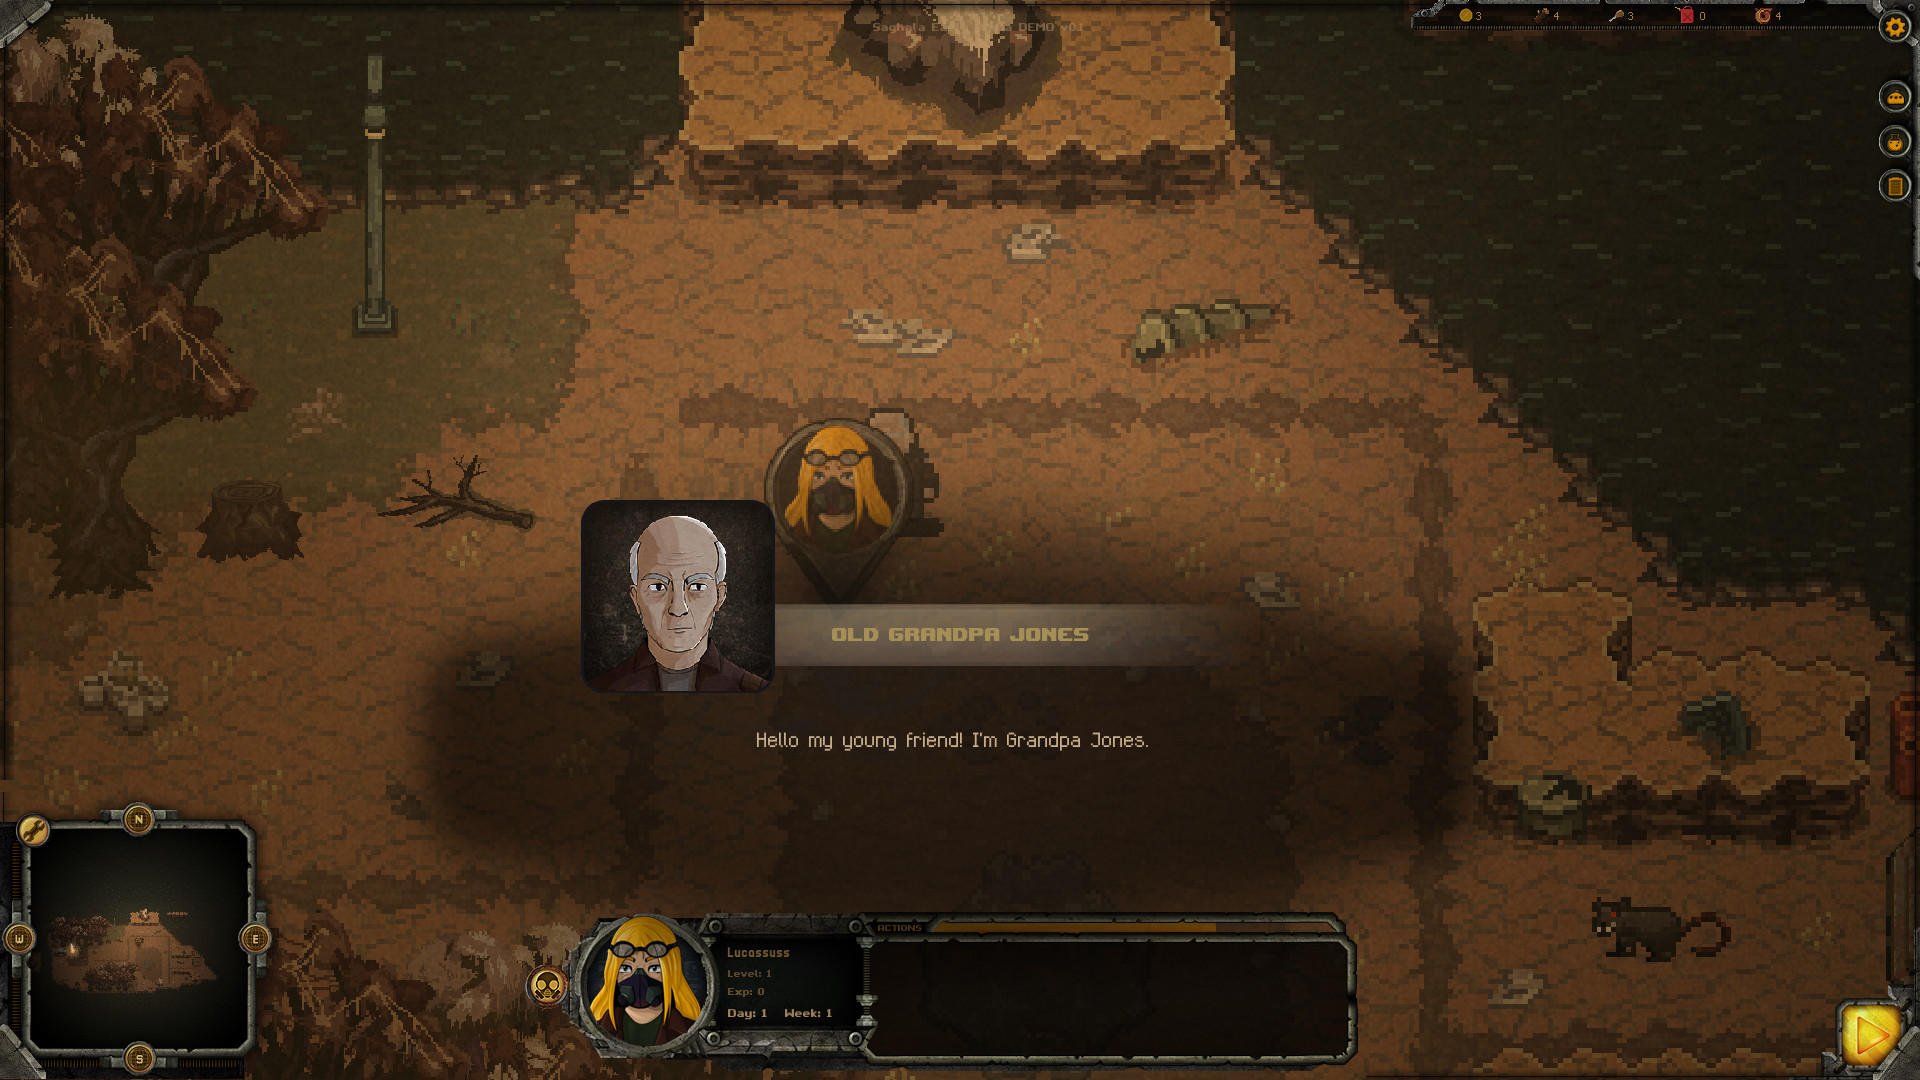 Screenshot of Saghala: Heroes of the Last World